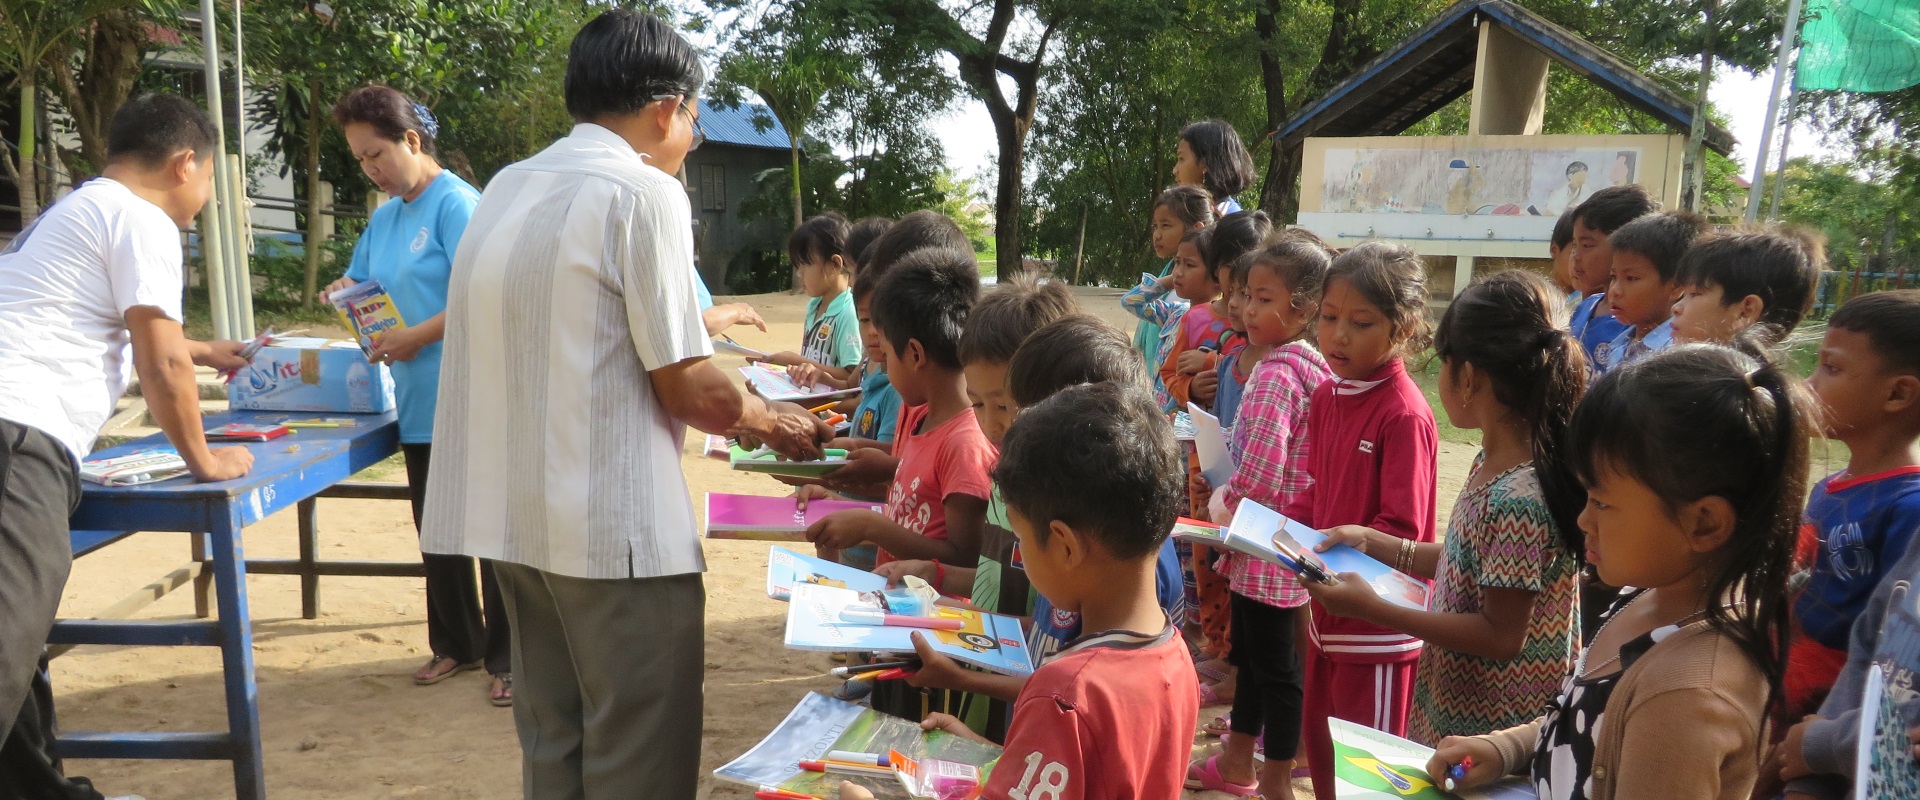 cambogia_consegna materiale scolastico_mani tese_2017